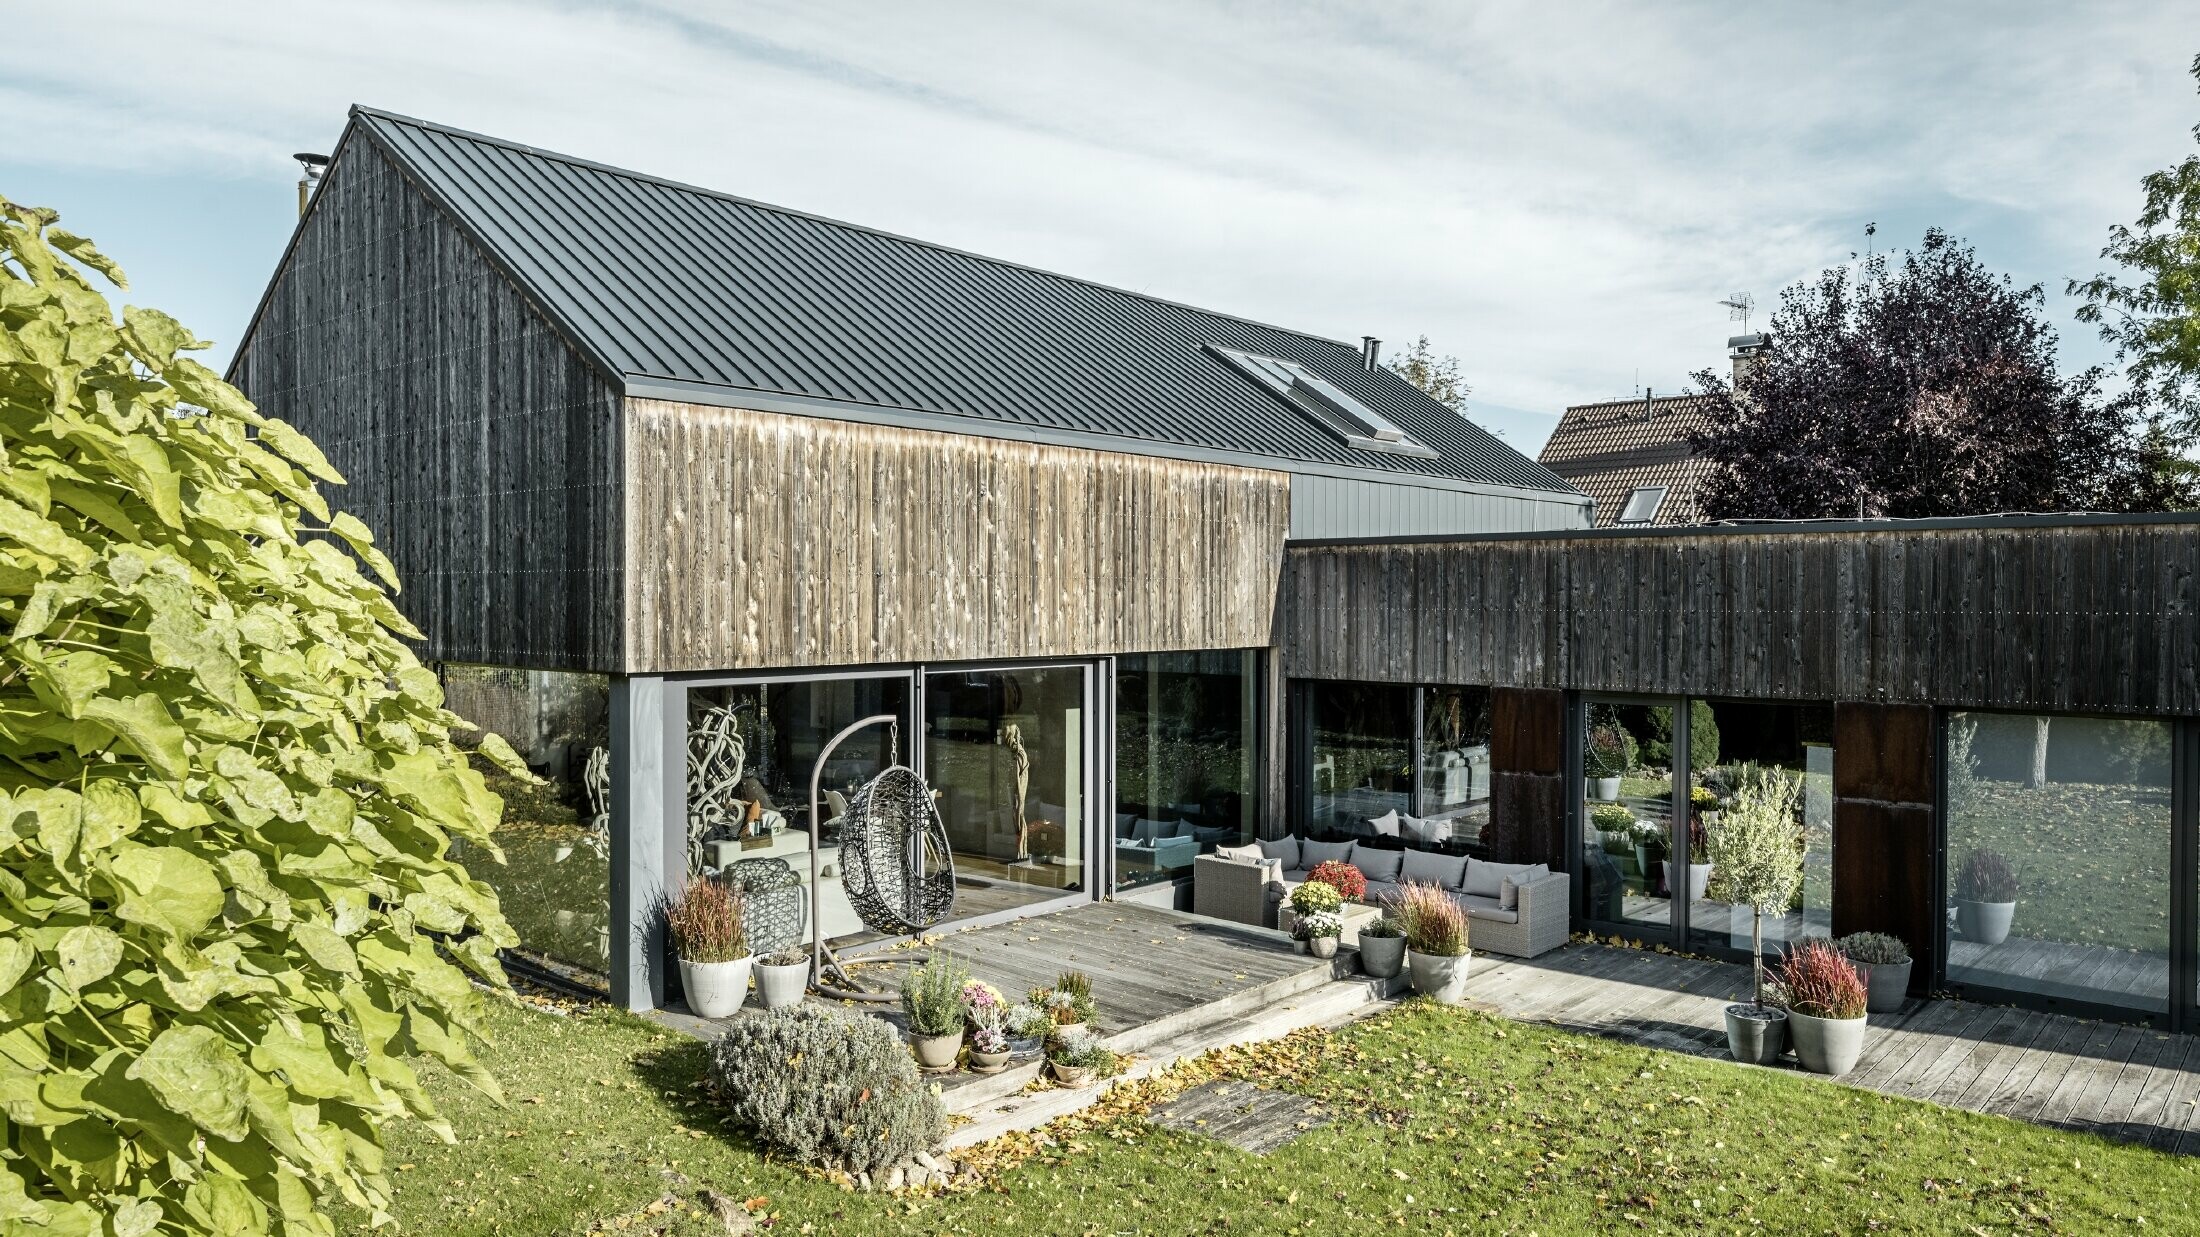 Dom jednorodzinny z dachem dwuspadowym, pokryty PREFALZ w technologii rąbka podwójnego w kolorze antracytowym z elewacją z postarzanego drewna. Z pięknym tarasem drewnianym i dużymi oknami na parterze.